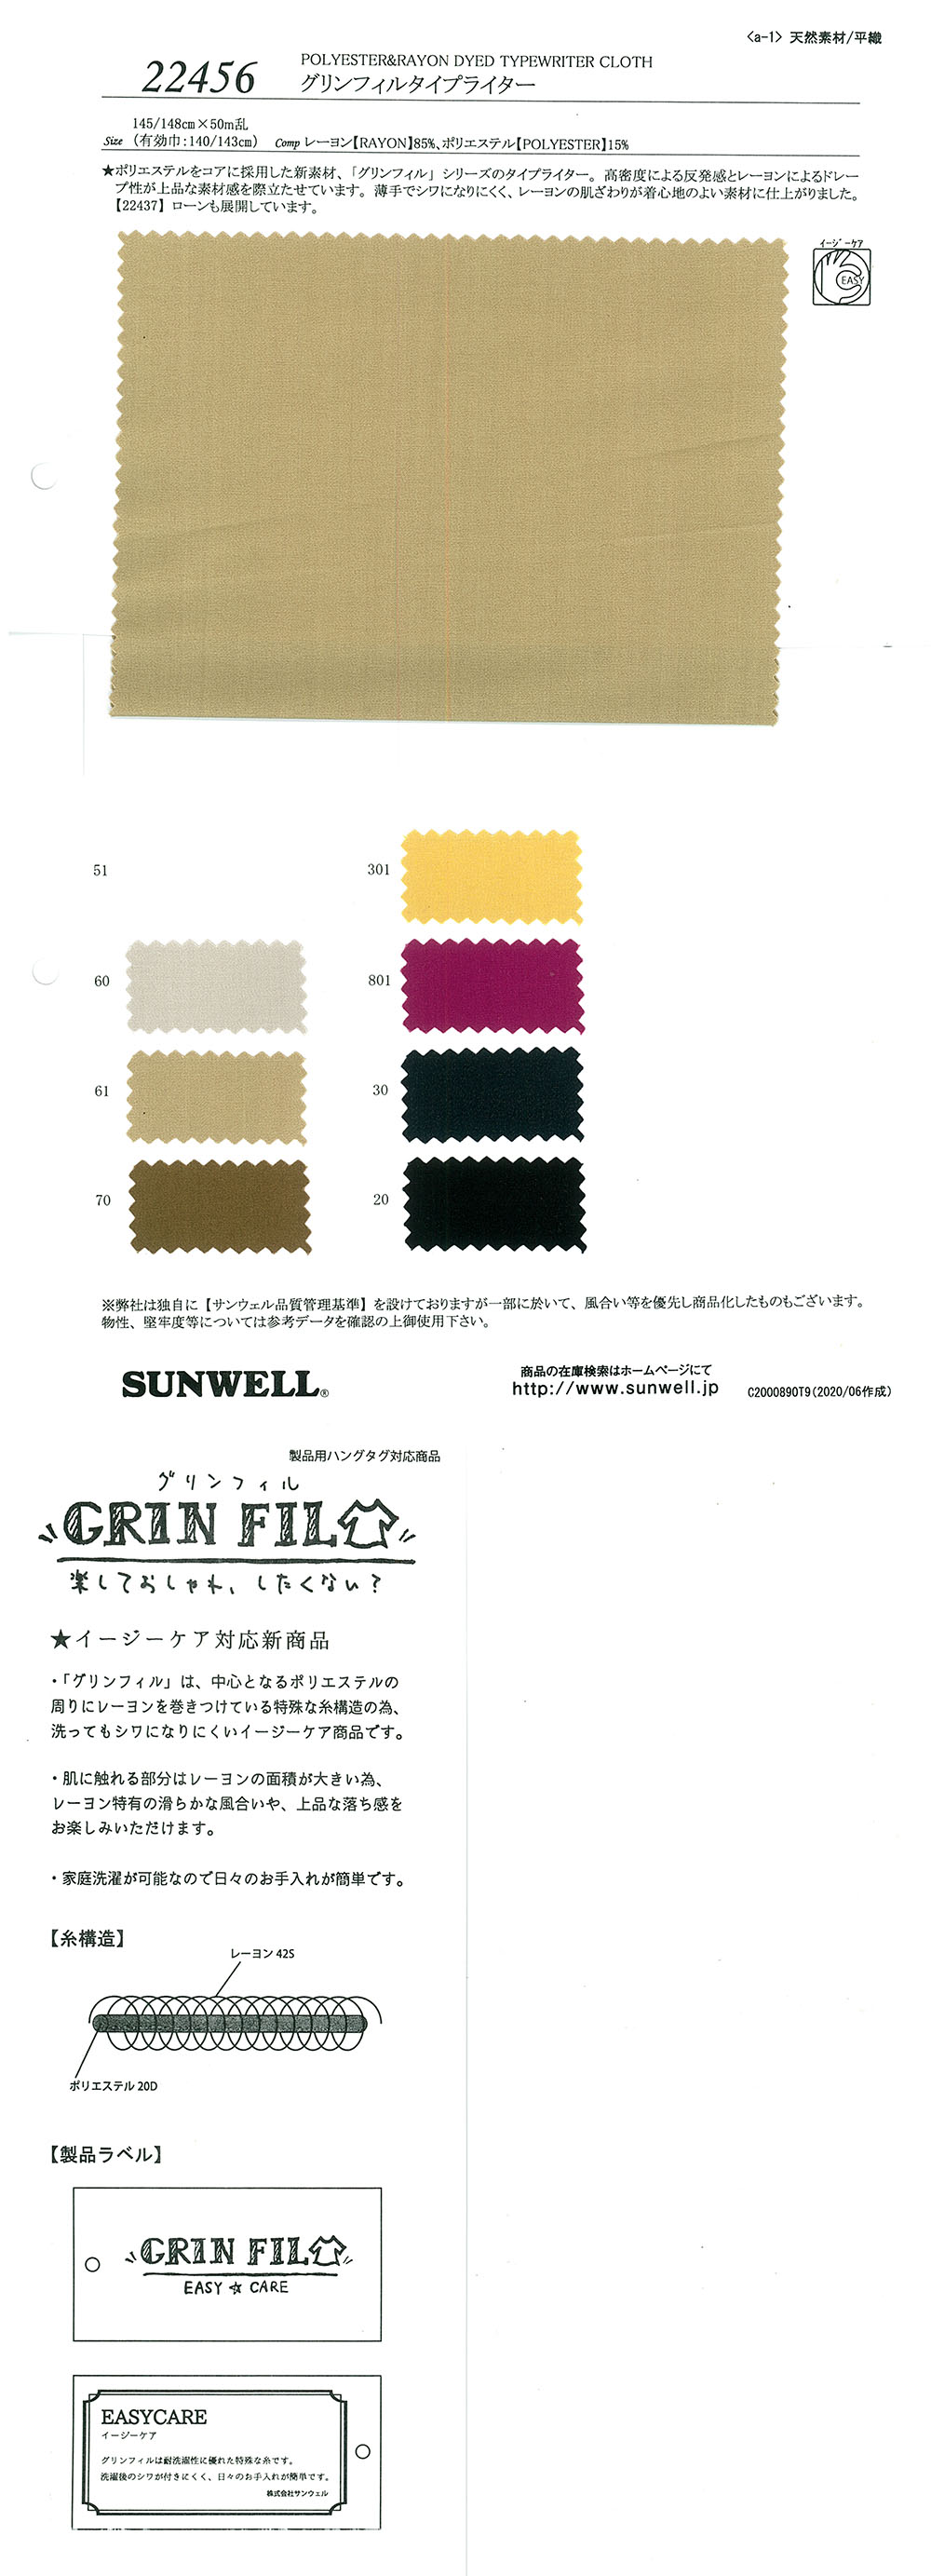 22456 GrinFil高密度平织[面料] SUNWELL